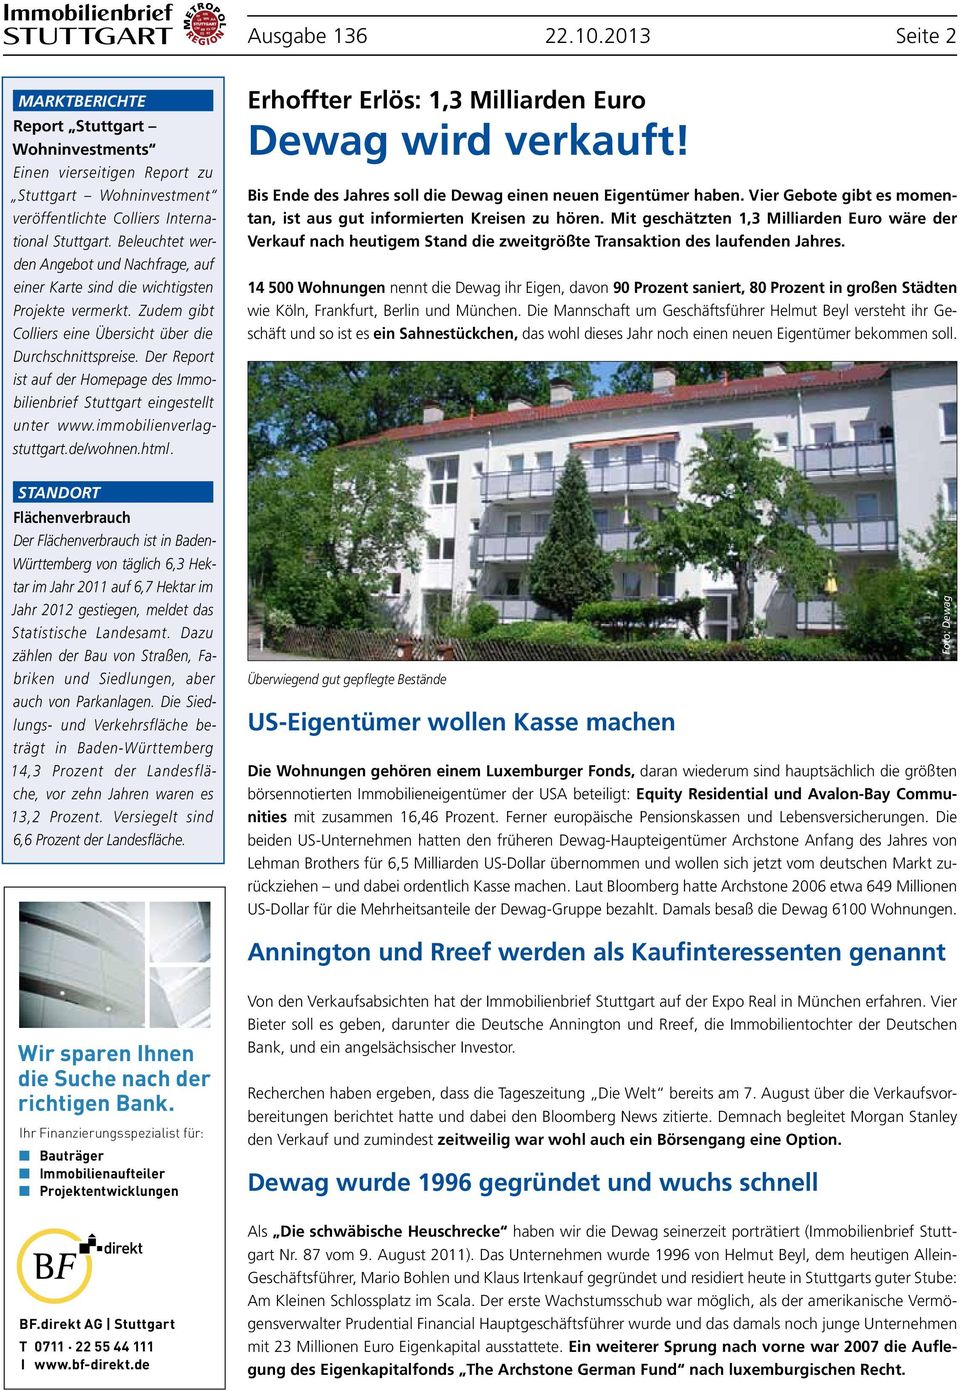 Der Report ist auf der Homepage des Immobilienbrief Stuttgart eingestellt unter www.immobilienverlagstuttgart.de/wohnen.html.